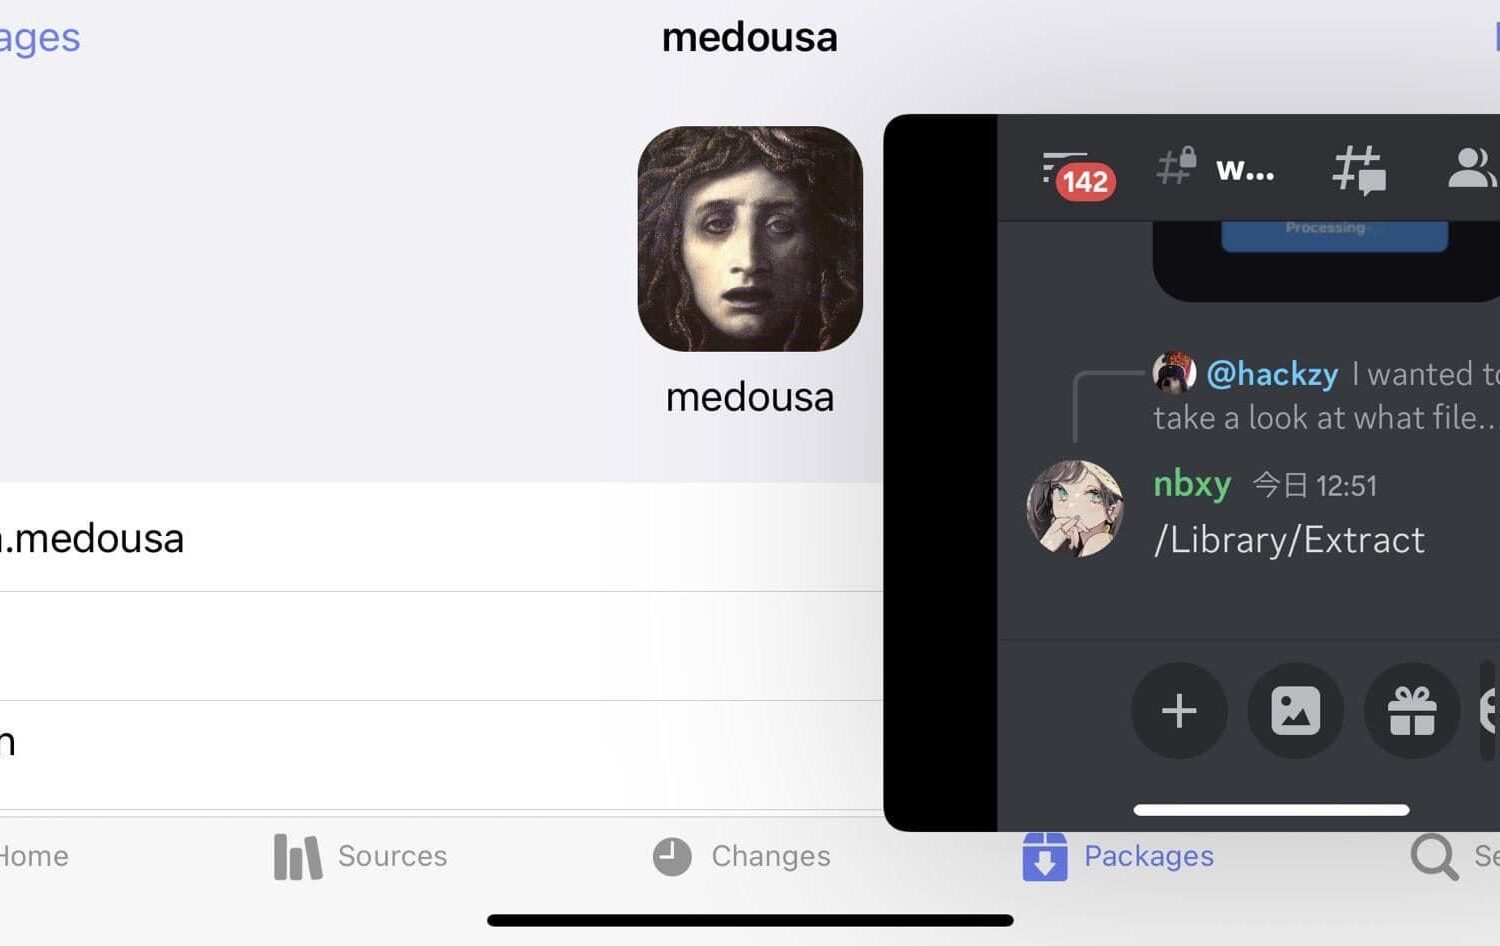 medousa iPad-style multitasking on iPhone landscape mode.